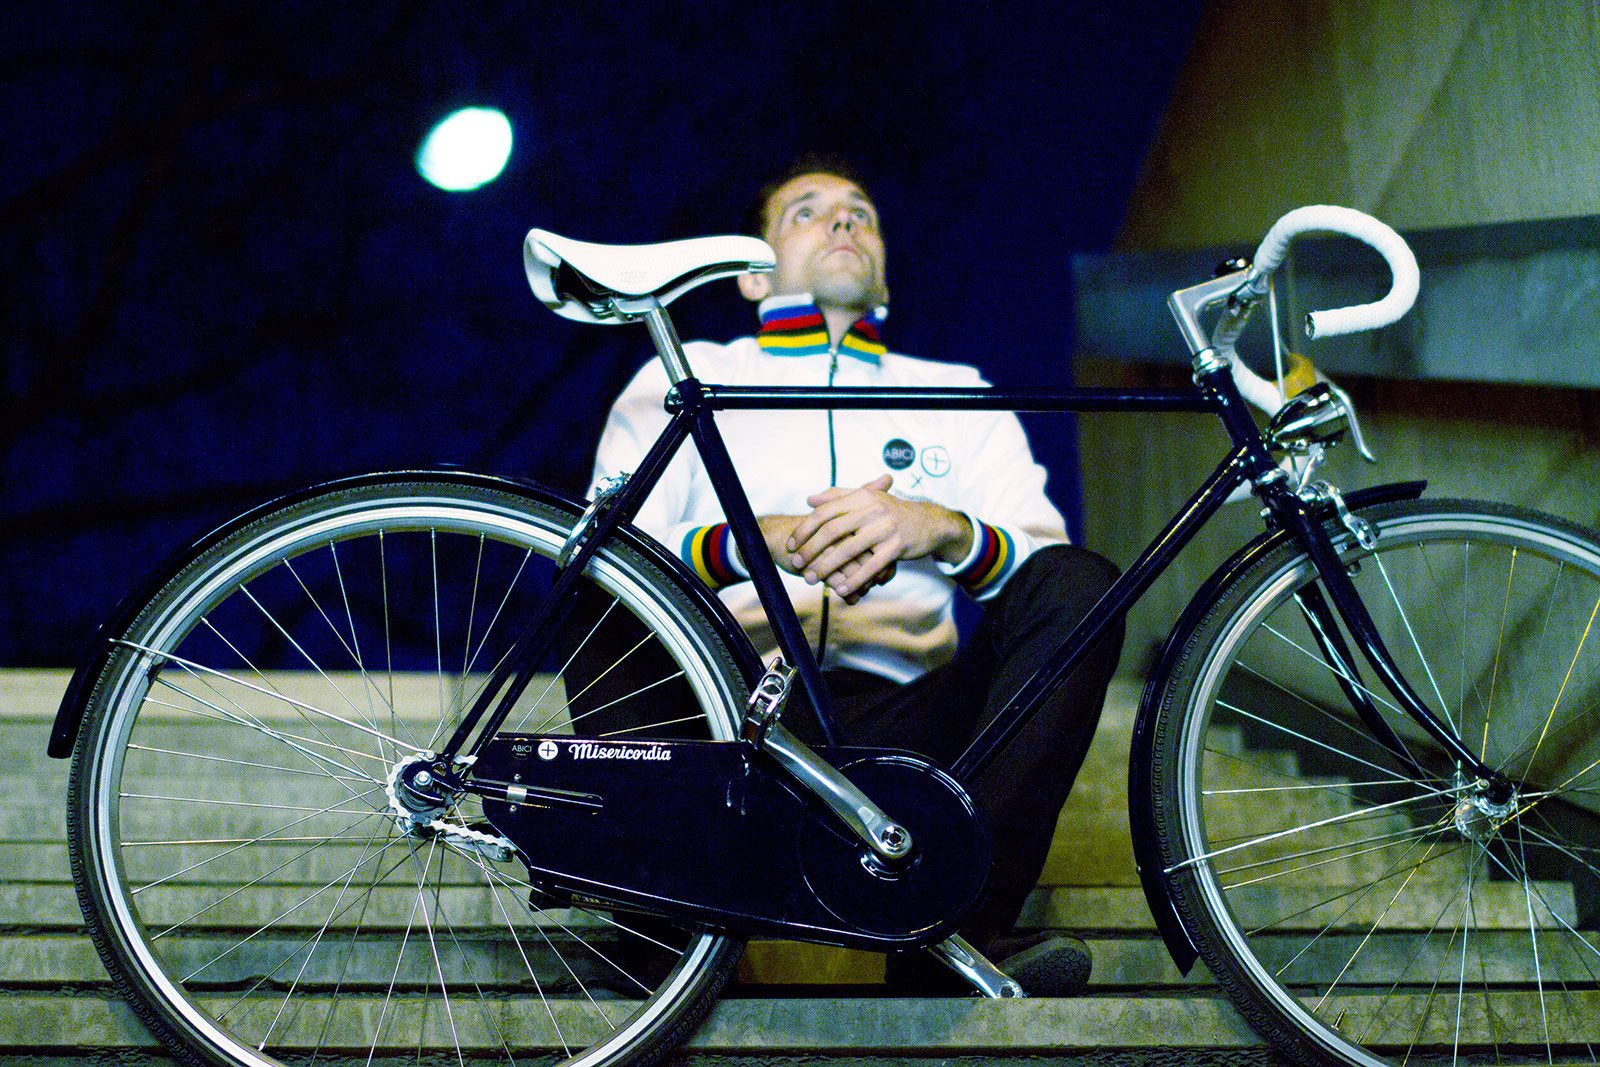 homme cycliste assis dans des marches avec son vélo ambiance urbaine underground photo de nuit 